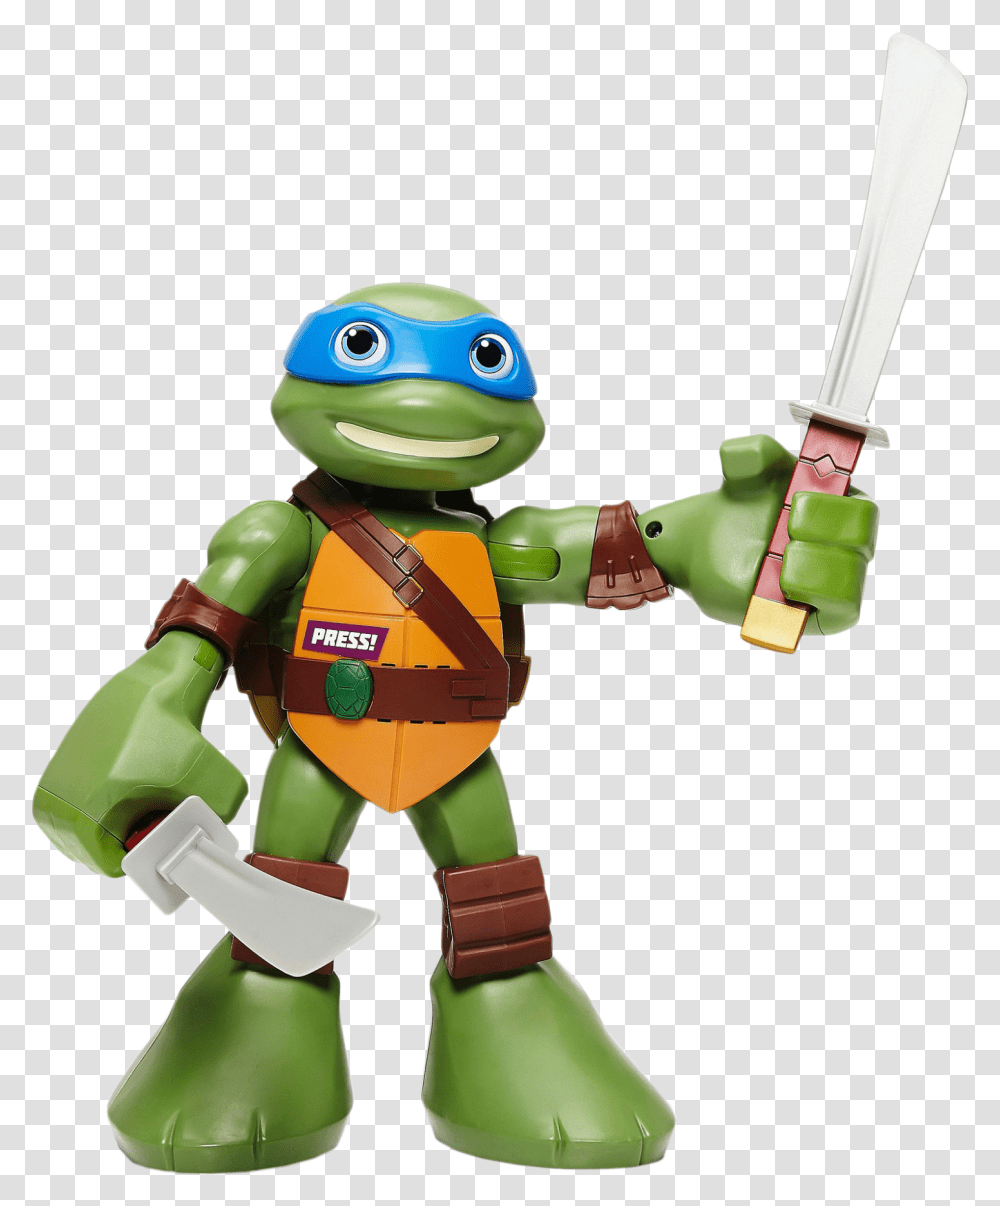 Shell Ninja Turtle Teenage Mutant Ninja Turtles Toy Leo, Robot, Costume Transparent Png